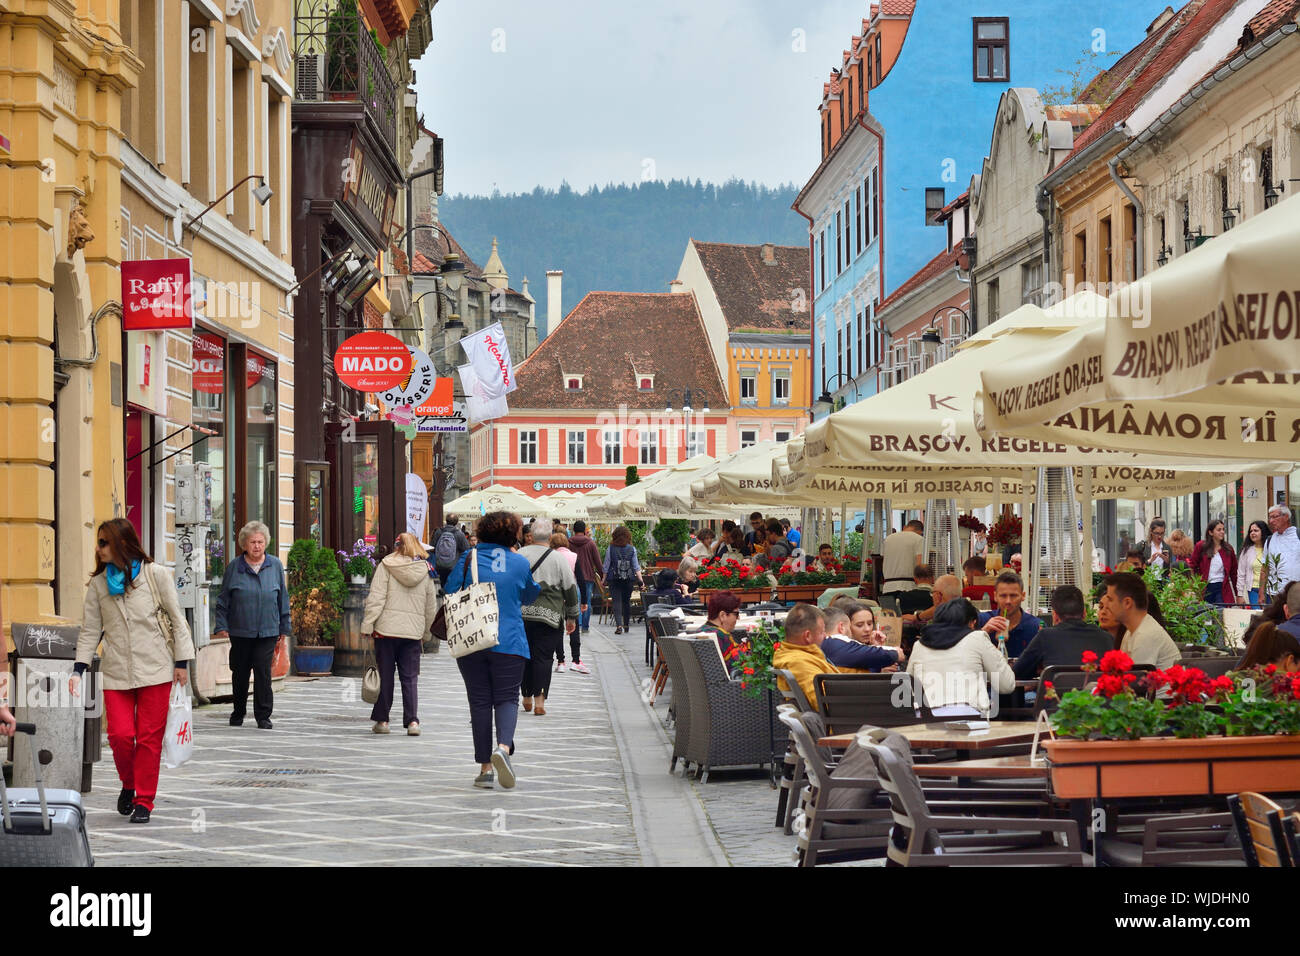 Republicii street, la principale strada pedonale e la strada dello shopping di Brasov, pieno di ristoranti. Brasov, Romania Foto Stock